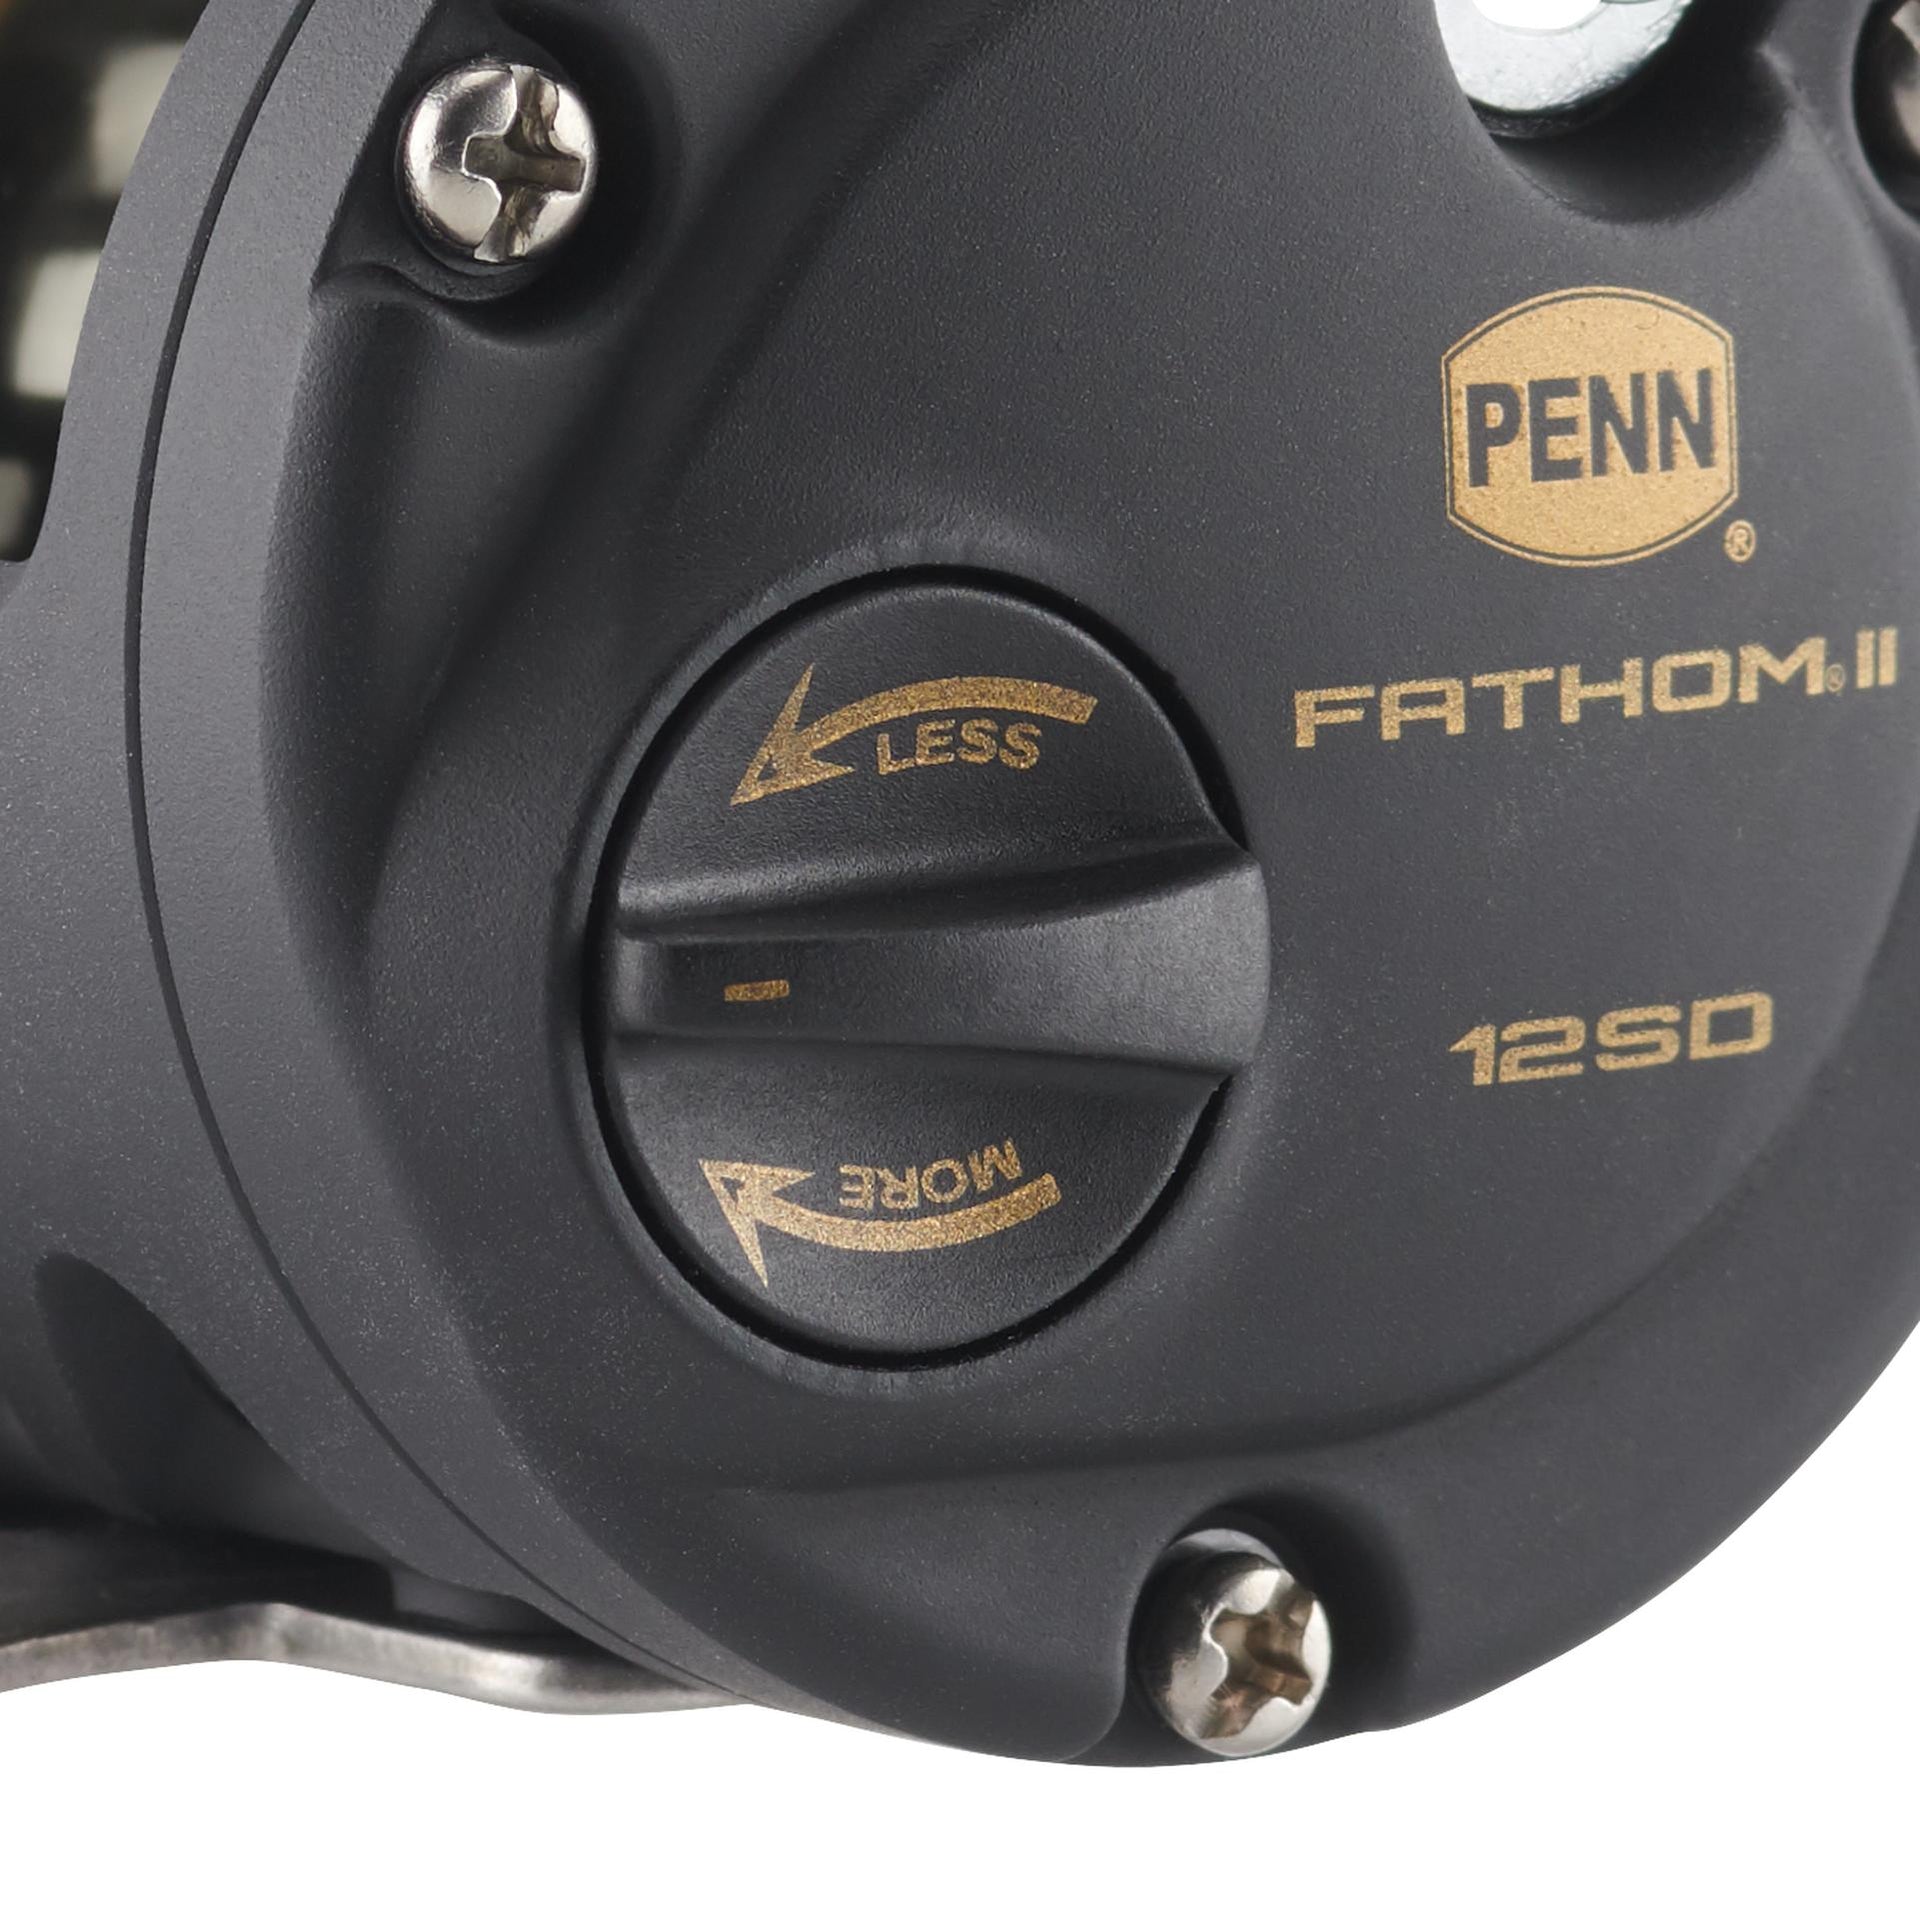 Big fan of the Penn Fathom FTH15XNLD2 2-Speed Lever Reels